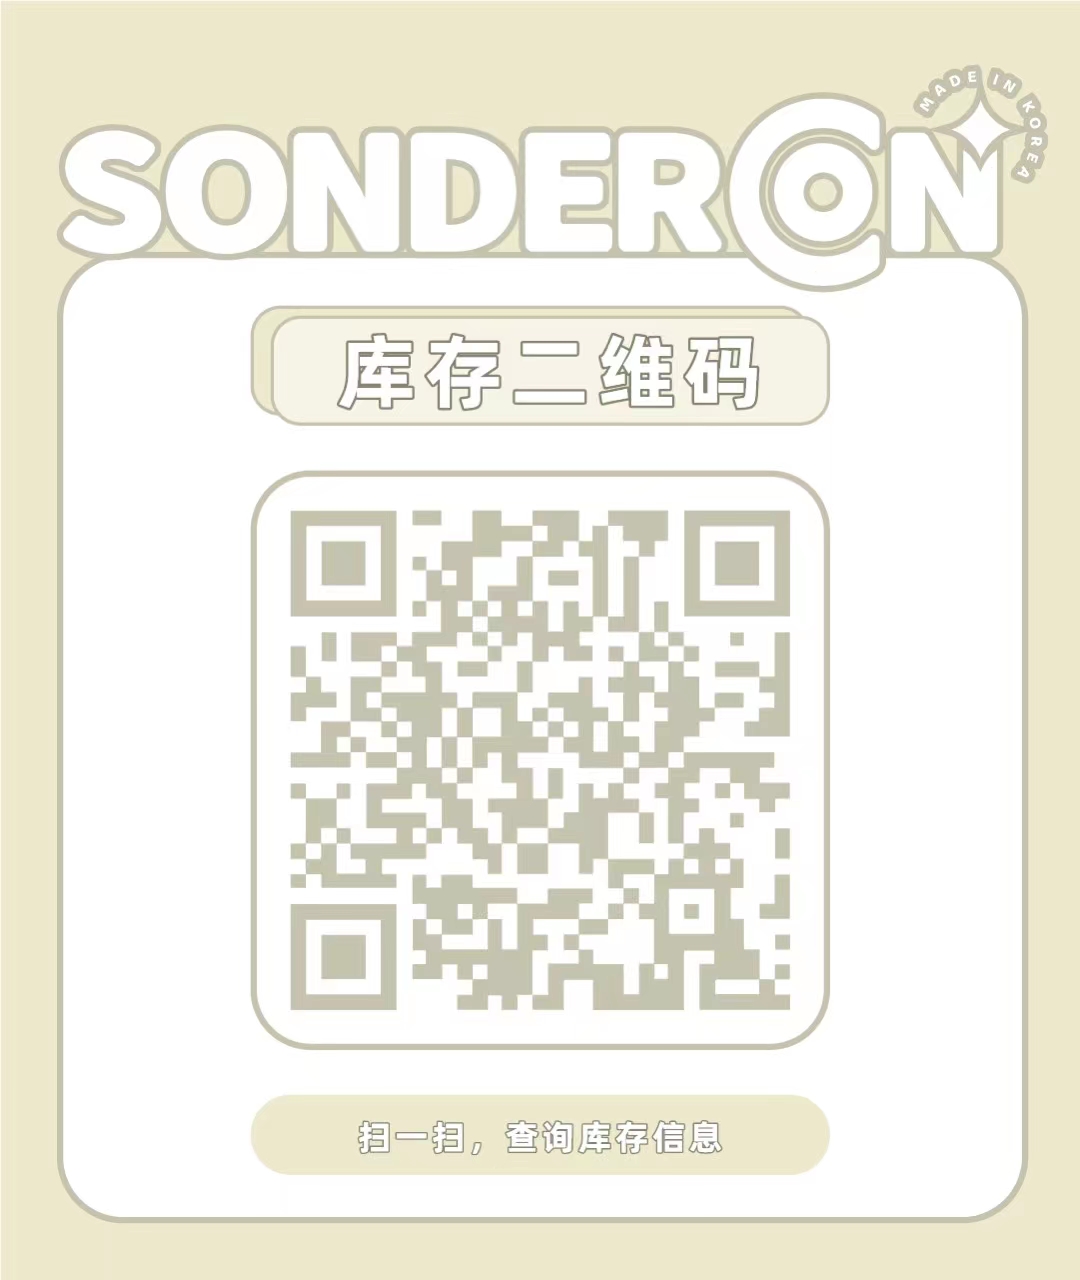 【日抛】Sondercon 0感舒适黑科技日抛 春日特刊登场 - VVCON美瞳网